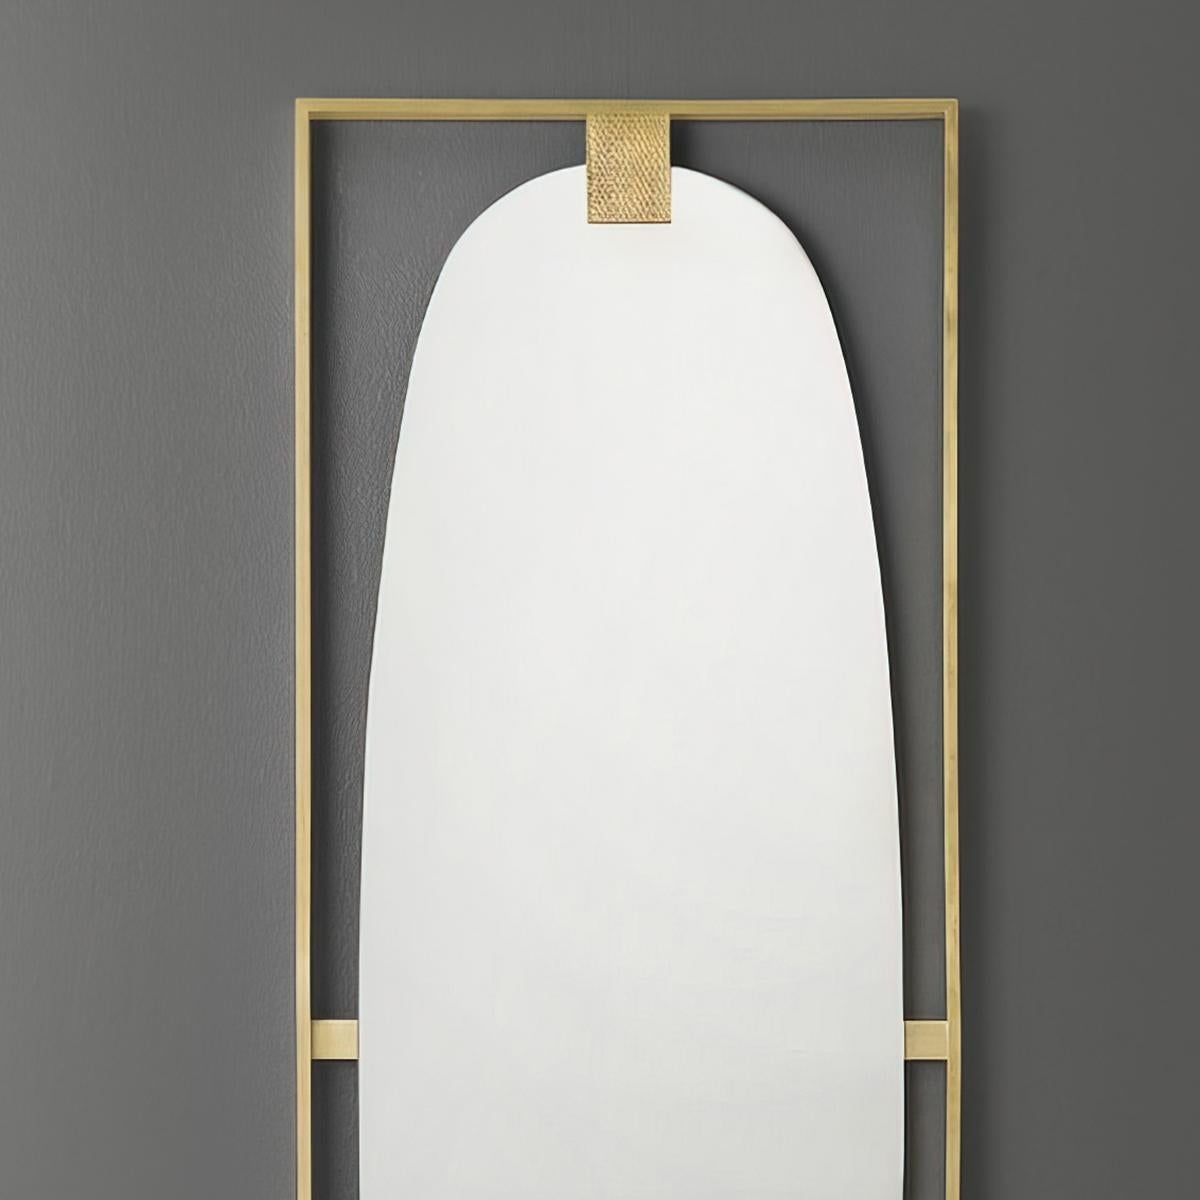 Miroir mural Art Deco en laiton, un grand miroir mural de forme rectangulaire avec un cadre en laiton satiné poli centré avec une plaque de miroir ovale.

Dimensions : 19.5